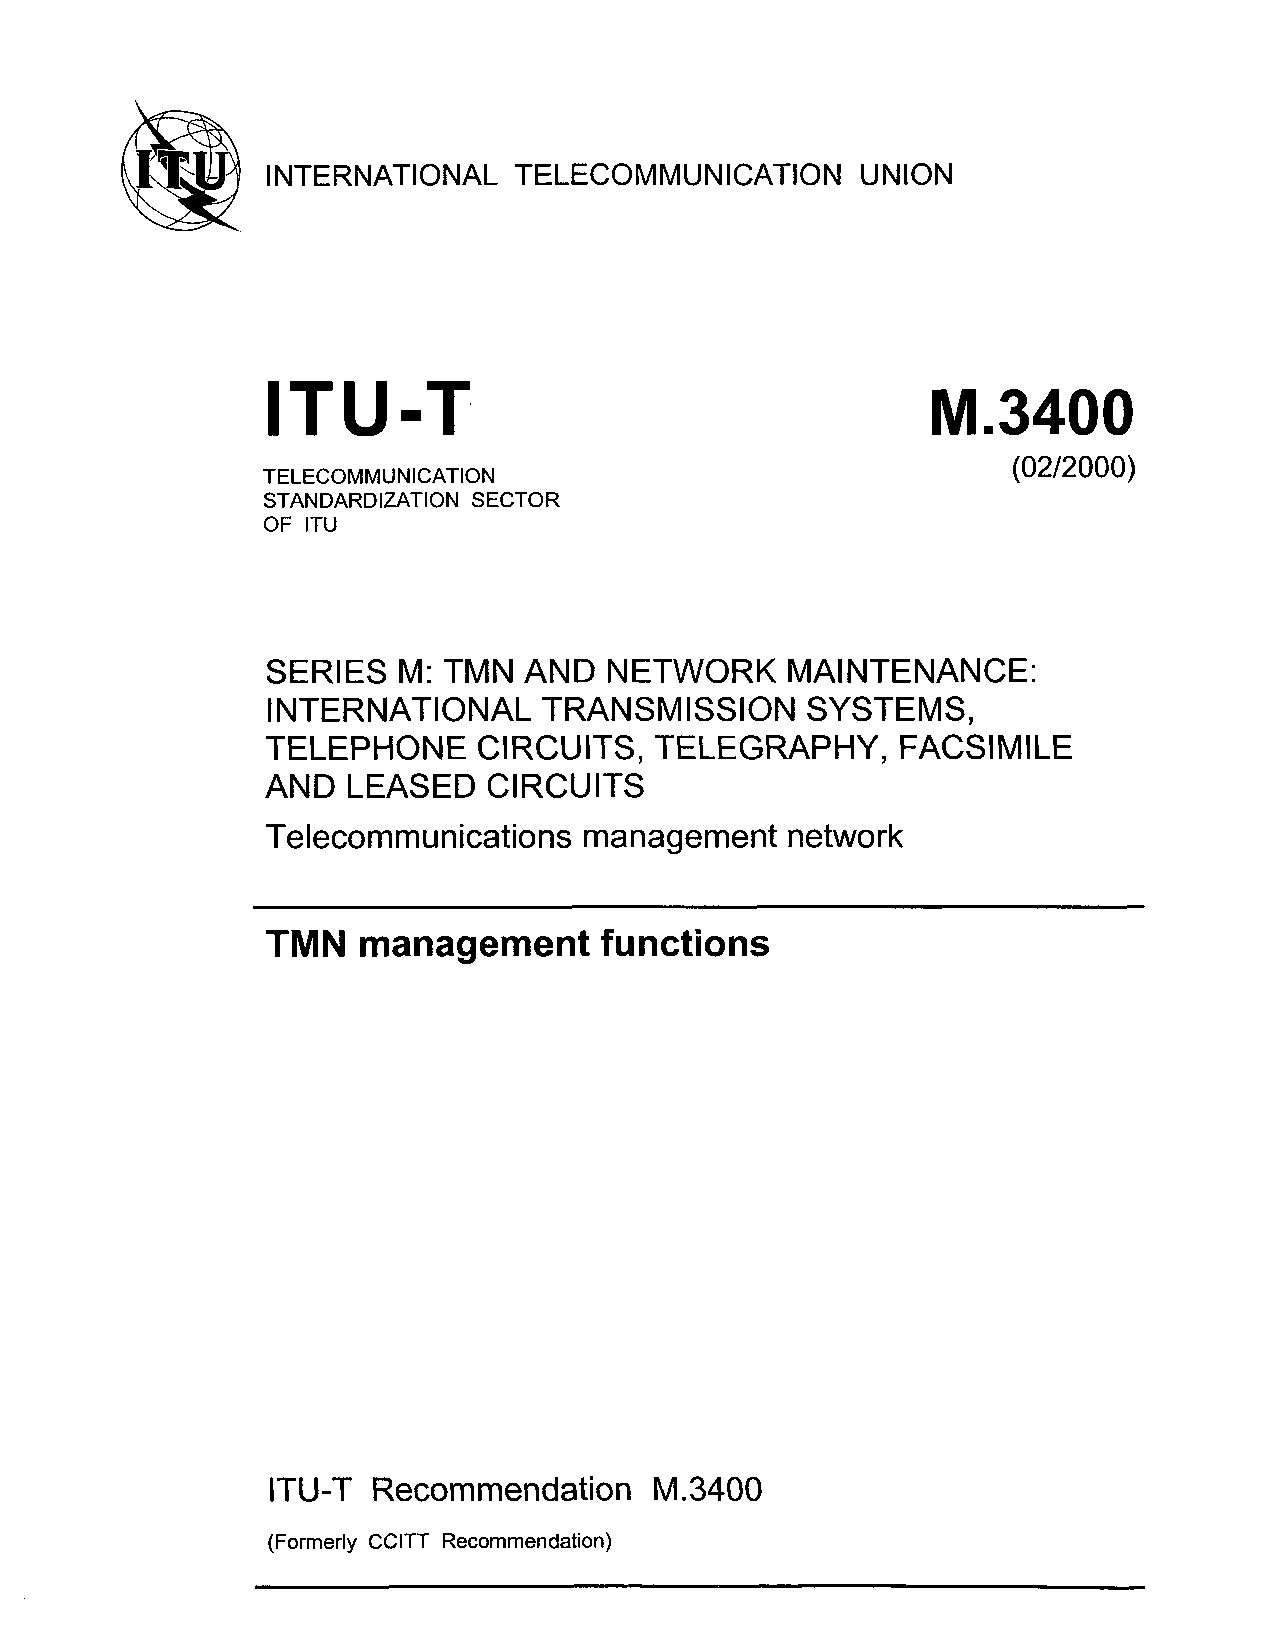 ITU-T M.3400-2000